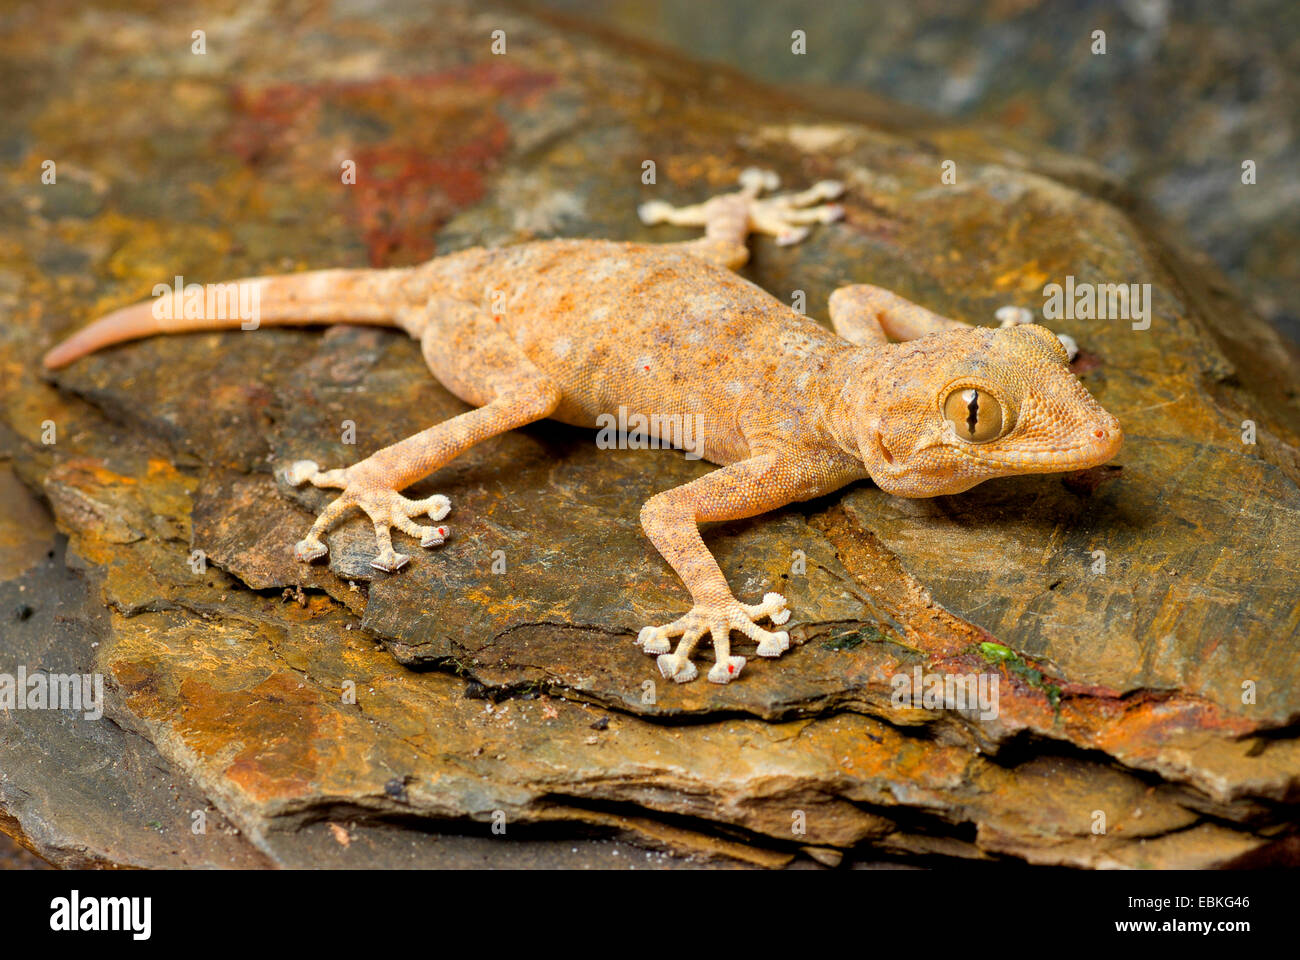 Fan-toed gecko, Yellow fan-fingered gecko (Ptyodactylus hasselquistii), on a stone Stock Photo